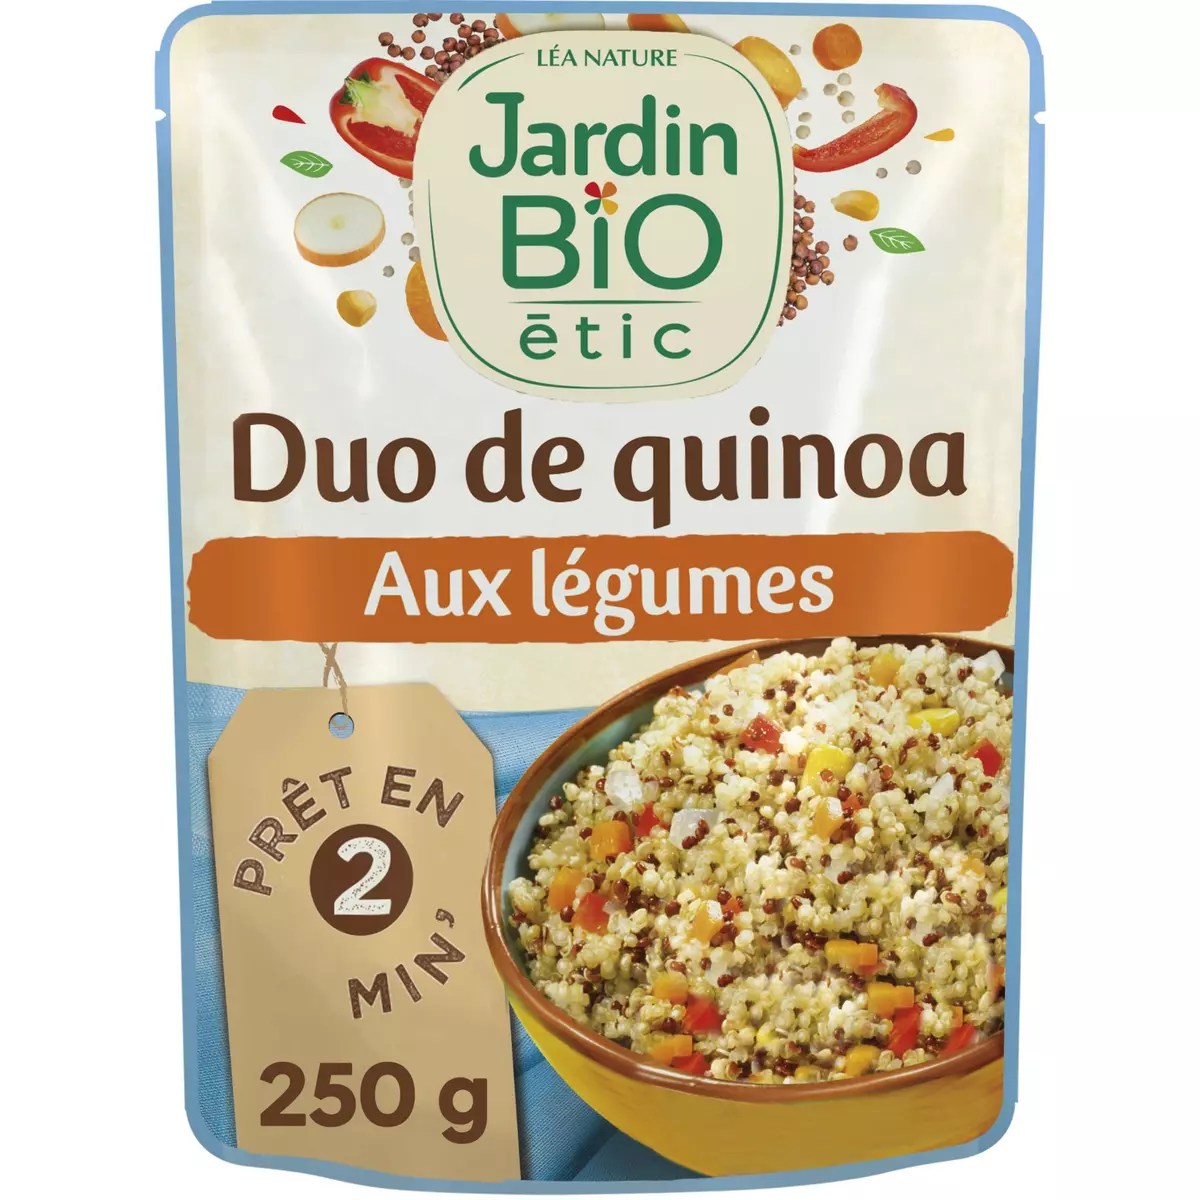 JARDIN BIO ETIC Duo de quinoa aux légumes fabriqué en France en poche prêt en 2 min 250g